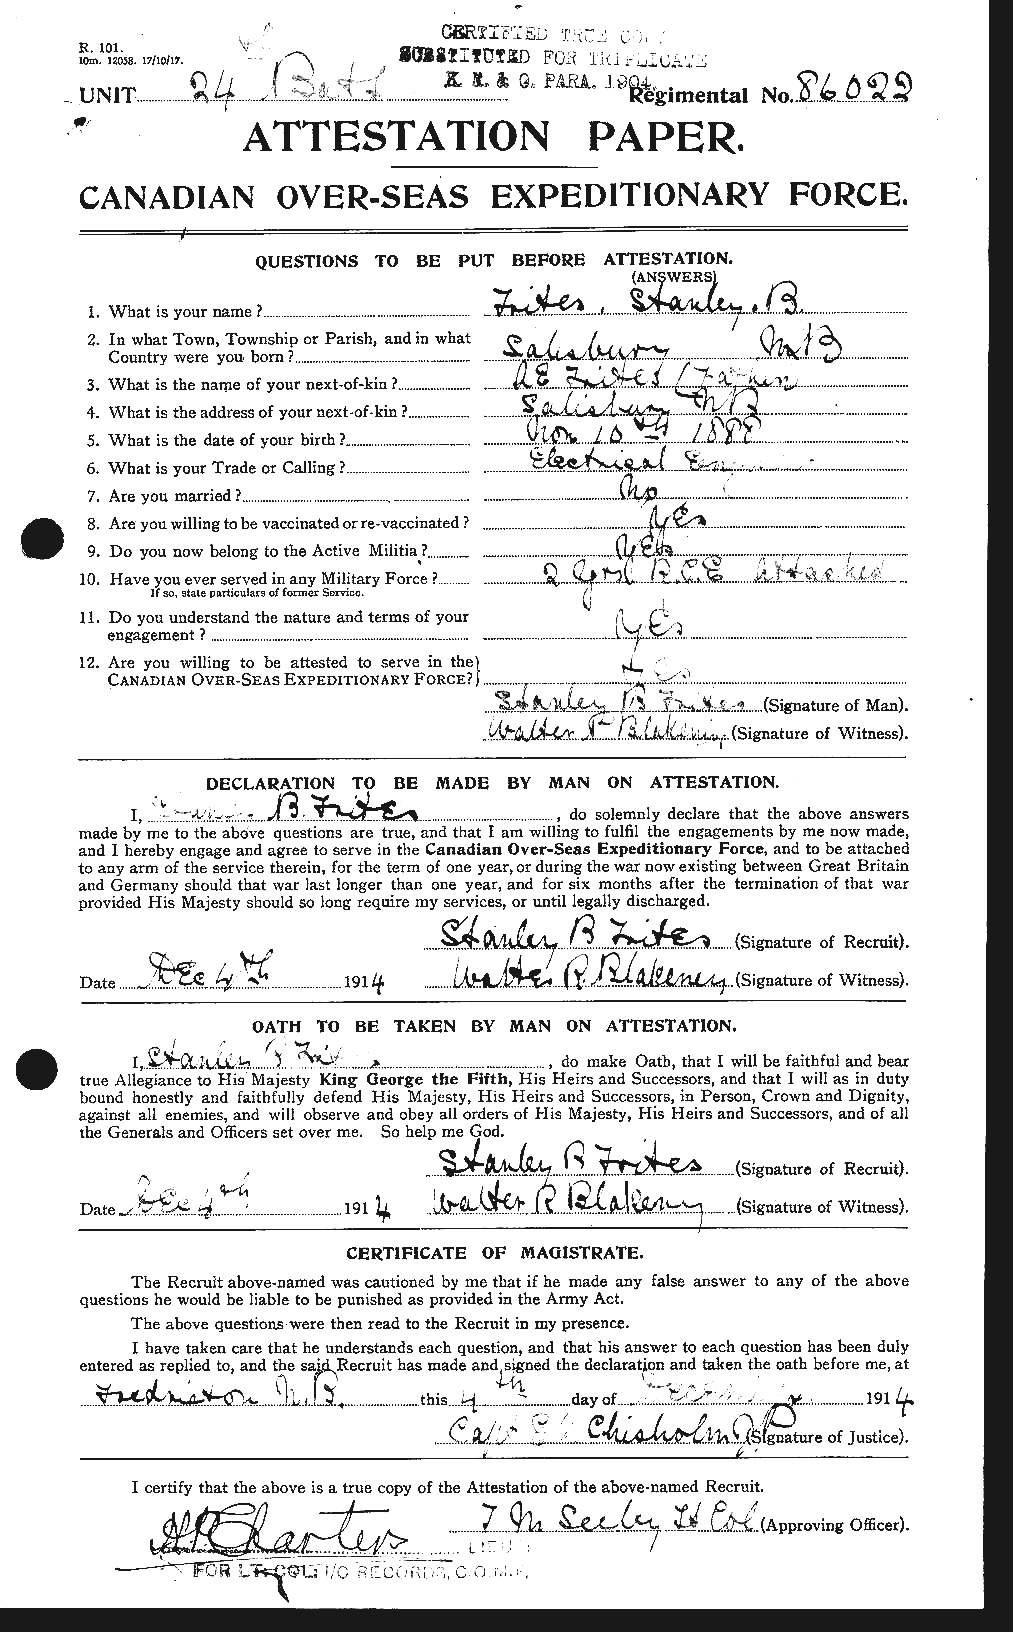 Dossiers du Personnel de la Première Guerre mondiale - CEC 640161a